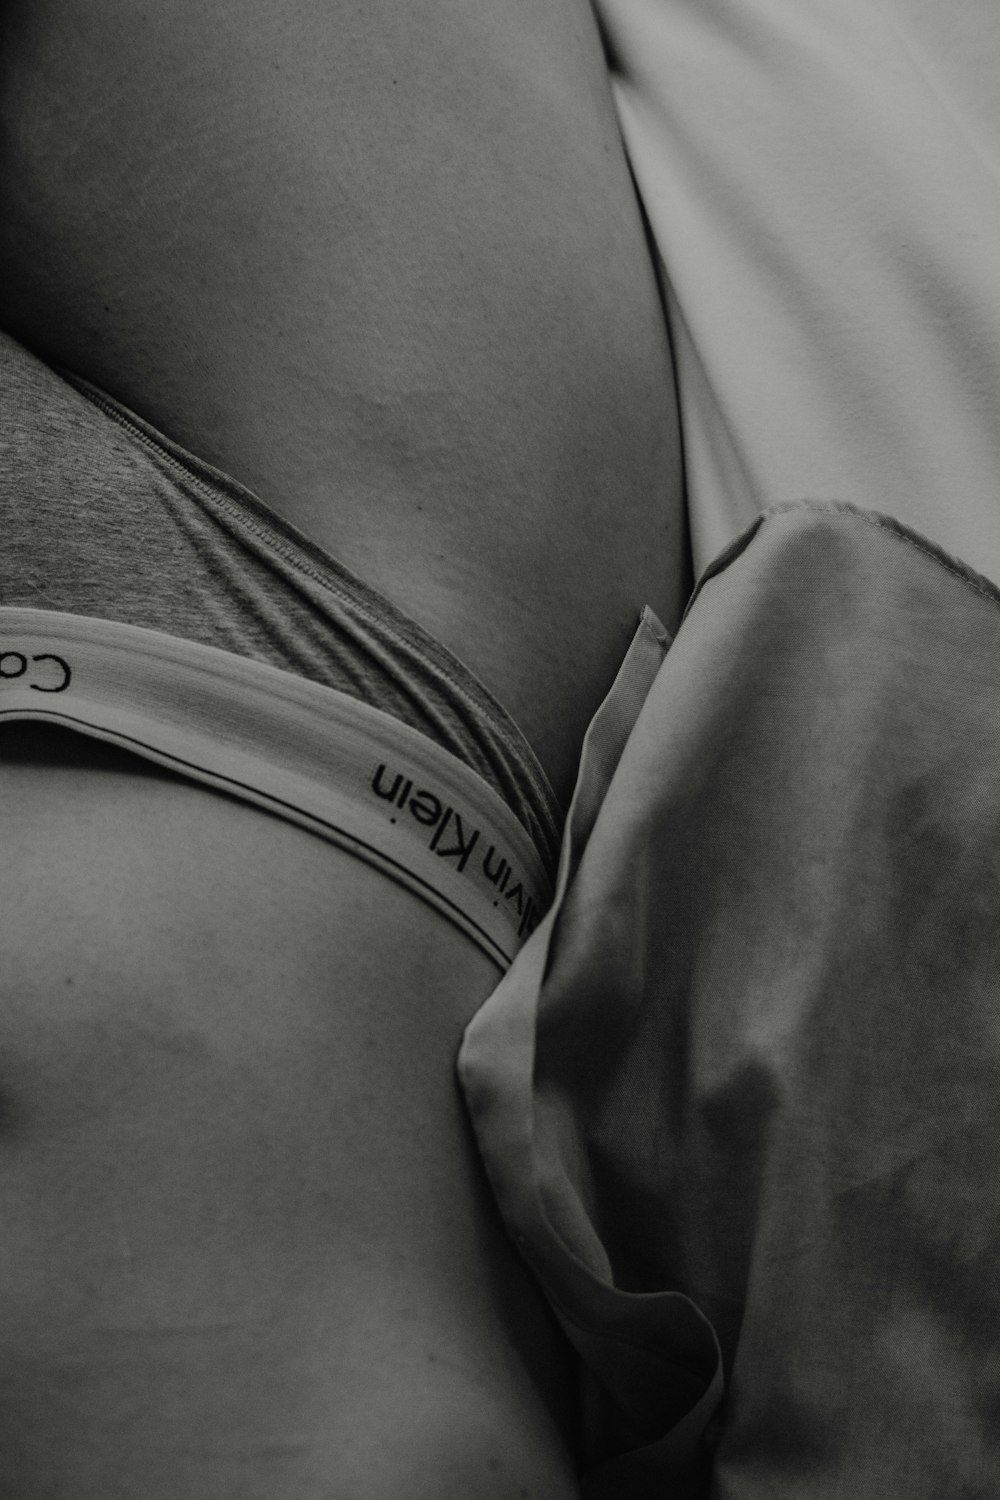 woman wearing Calvin Klein panties photo – Free Grey Image on Unsplash